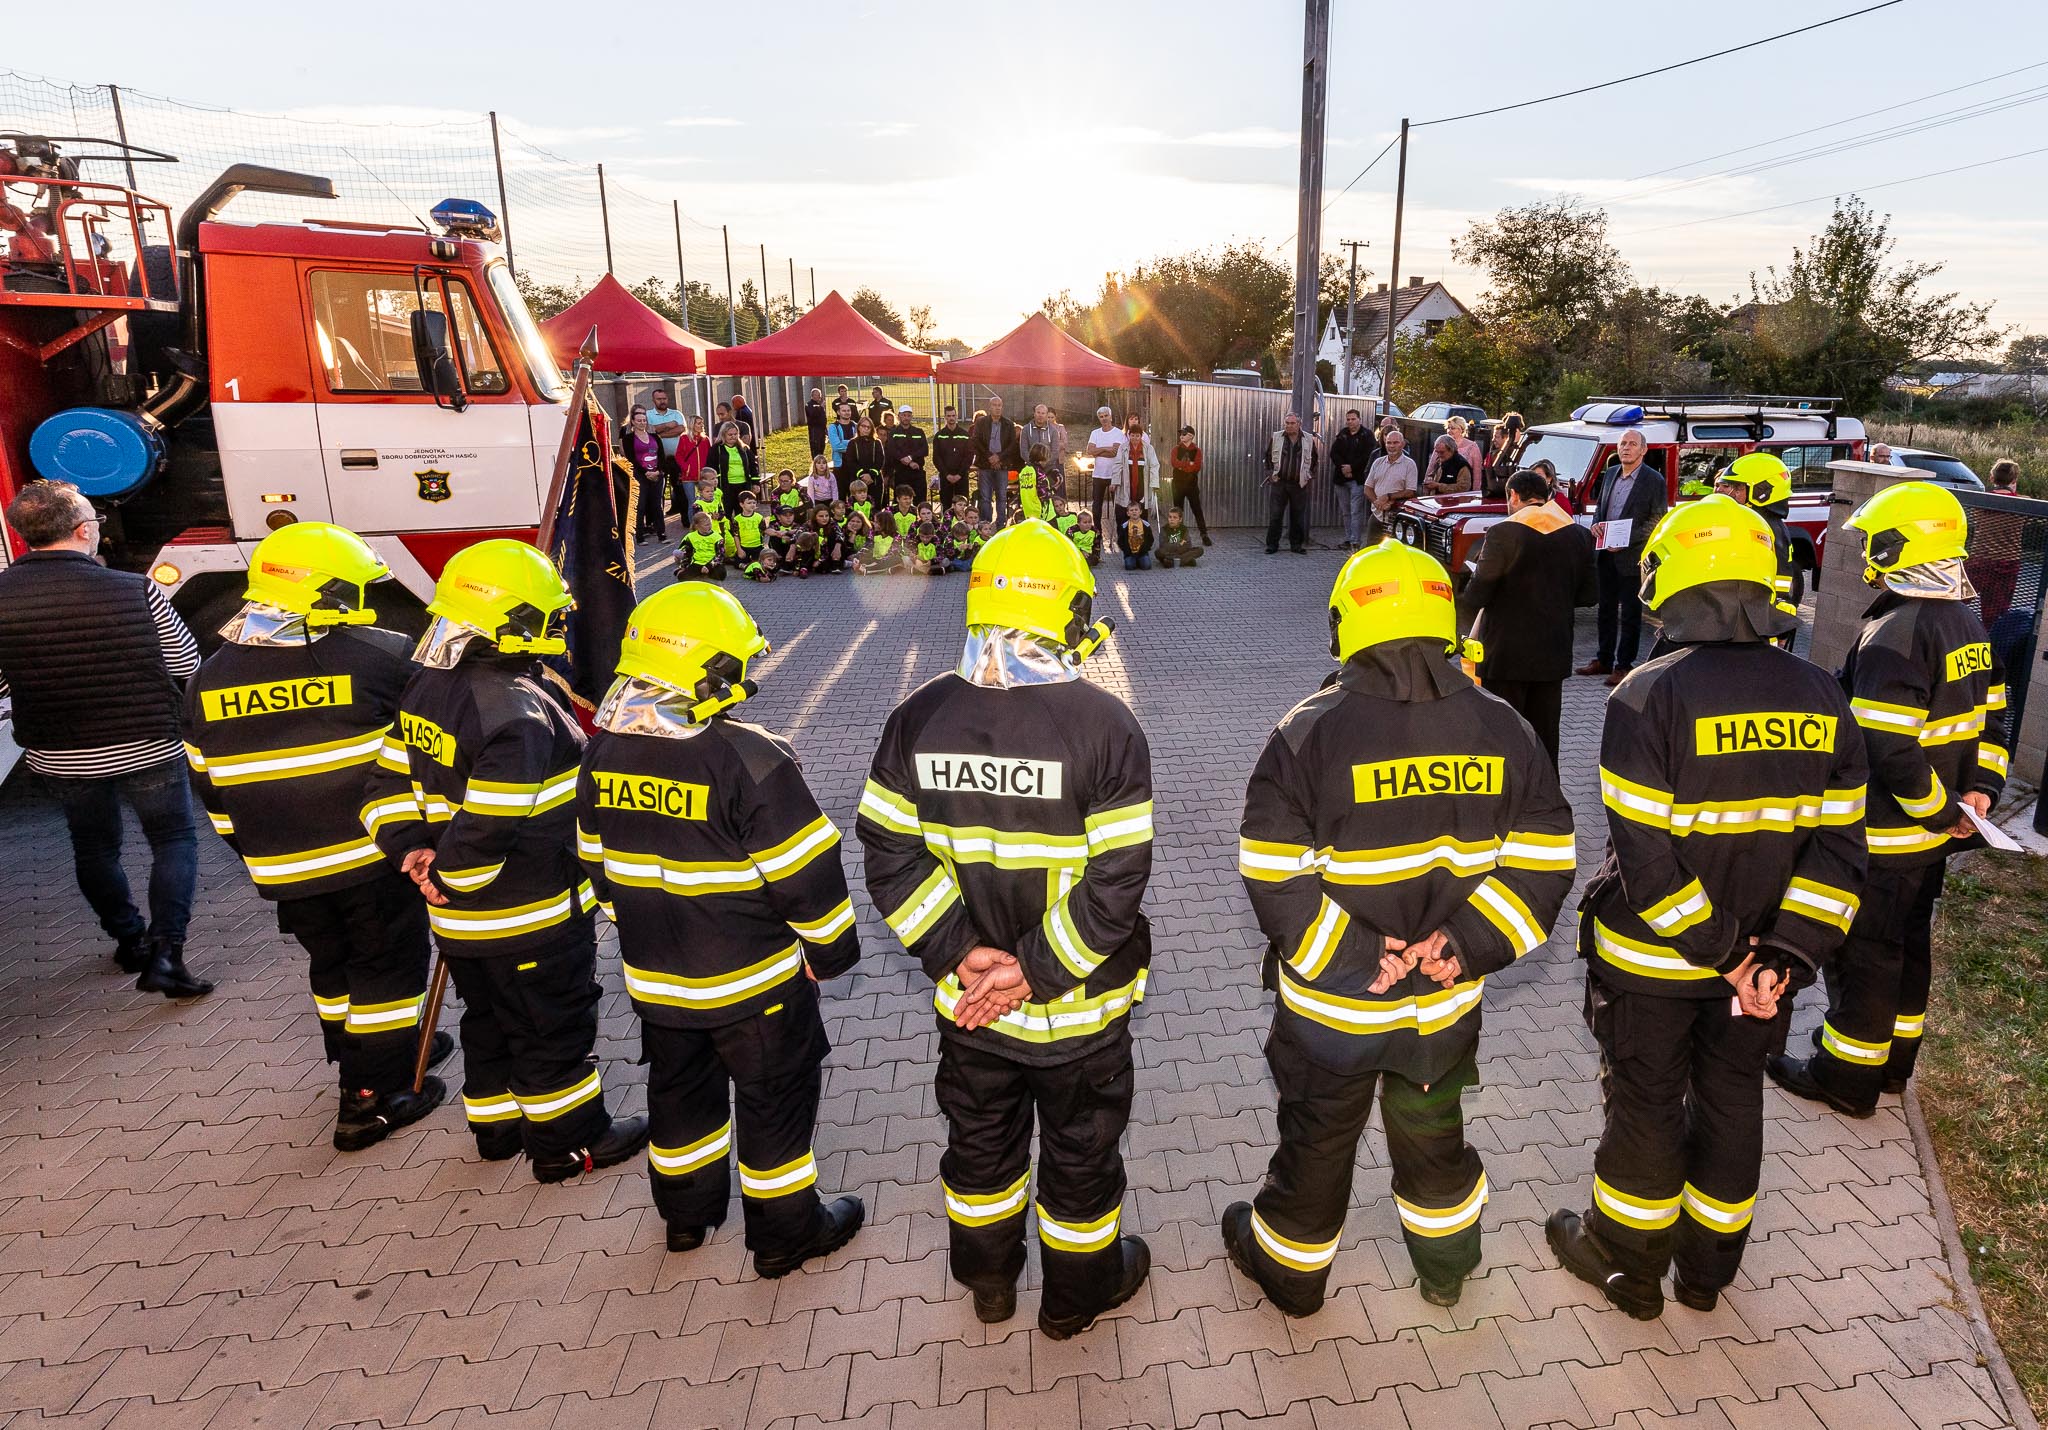 03 Spolana darovala hasičský vůz dobrovolným hasičům v Libiši.jpg